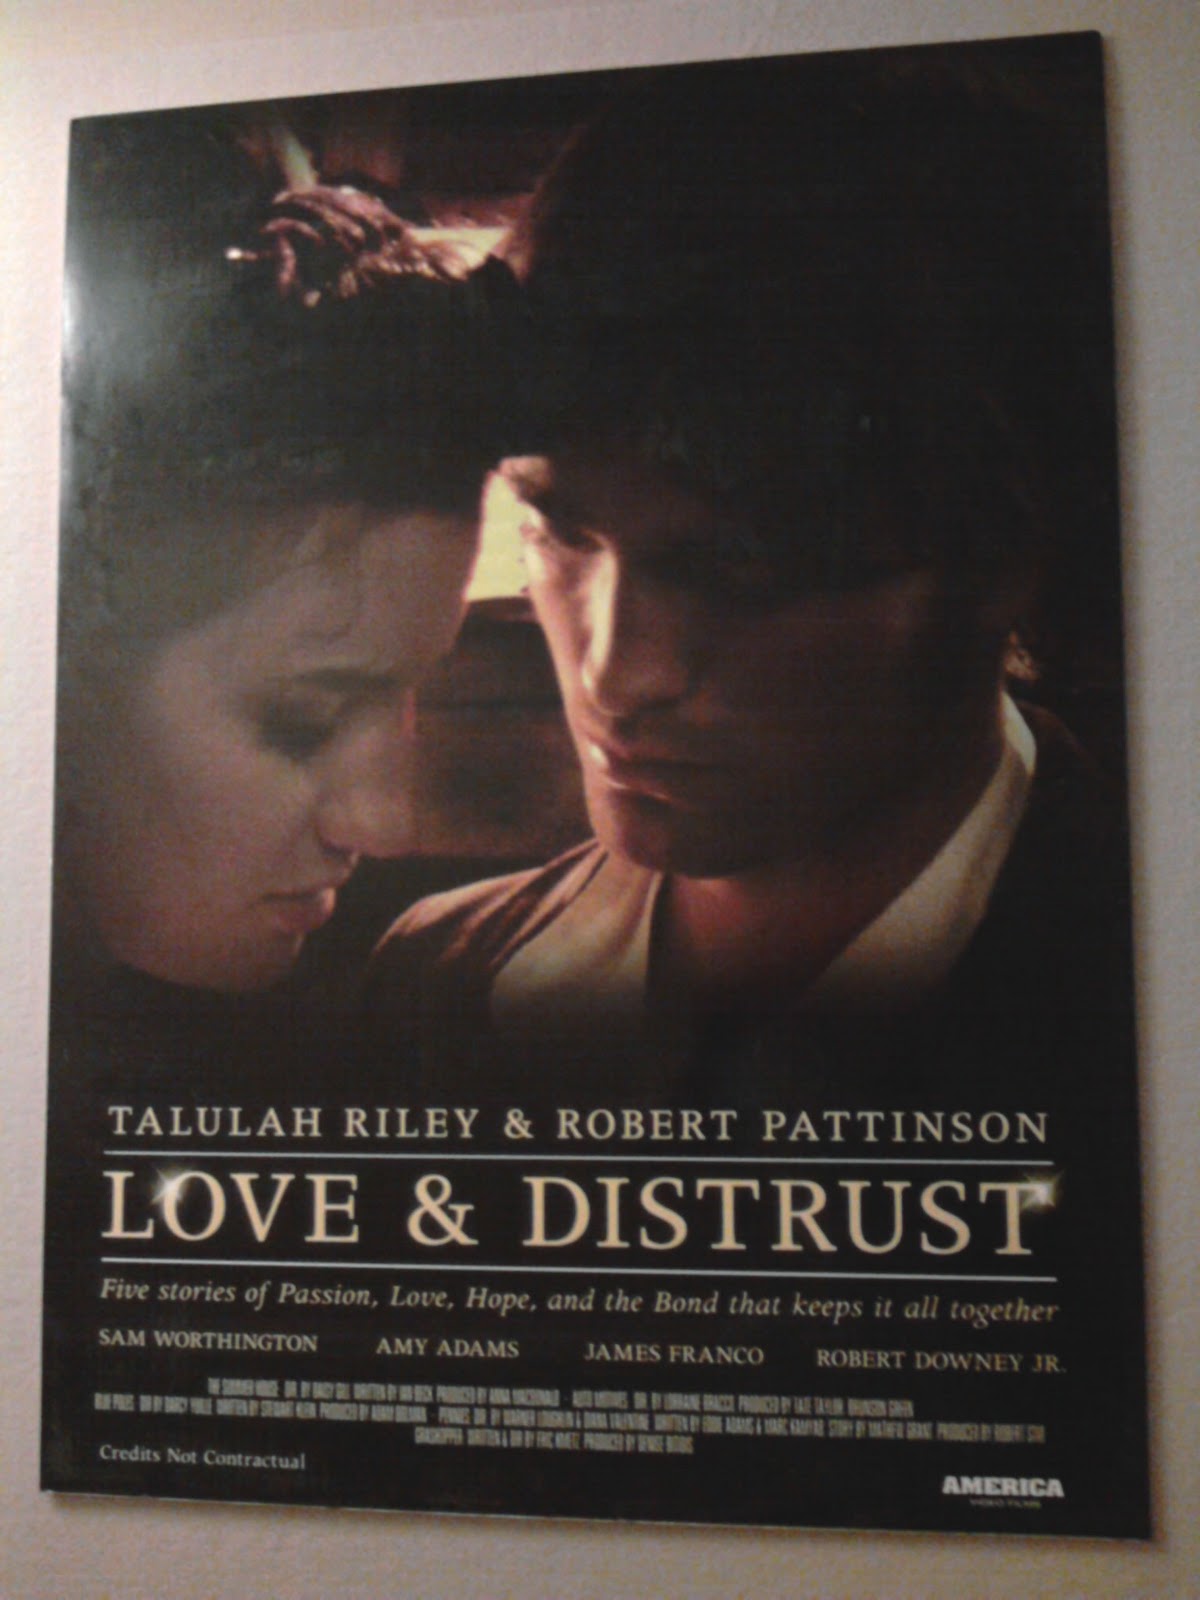 http://2.bp.blogspot.com/_5tpgvEUuTJA/TNhUx13lMTI/AAAAAAAAG5E/9WzQd-QDUNY/s1600/love_and_distrust_movie_poster_01.jpg